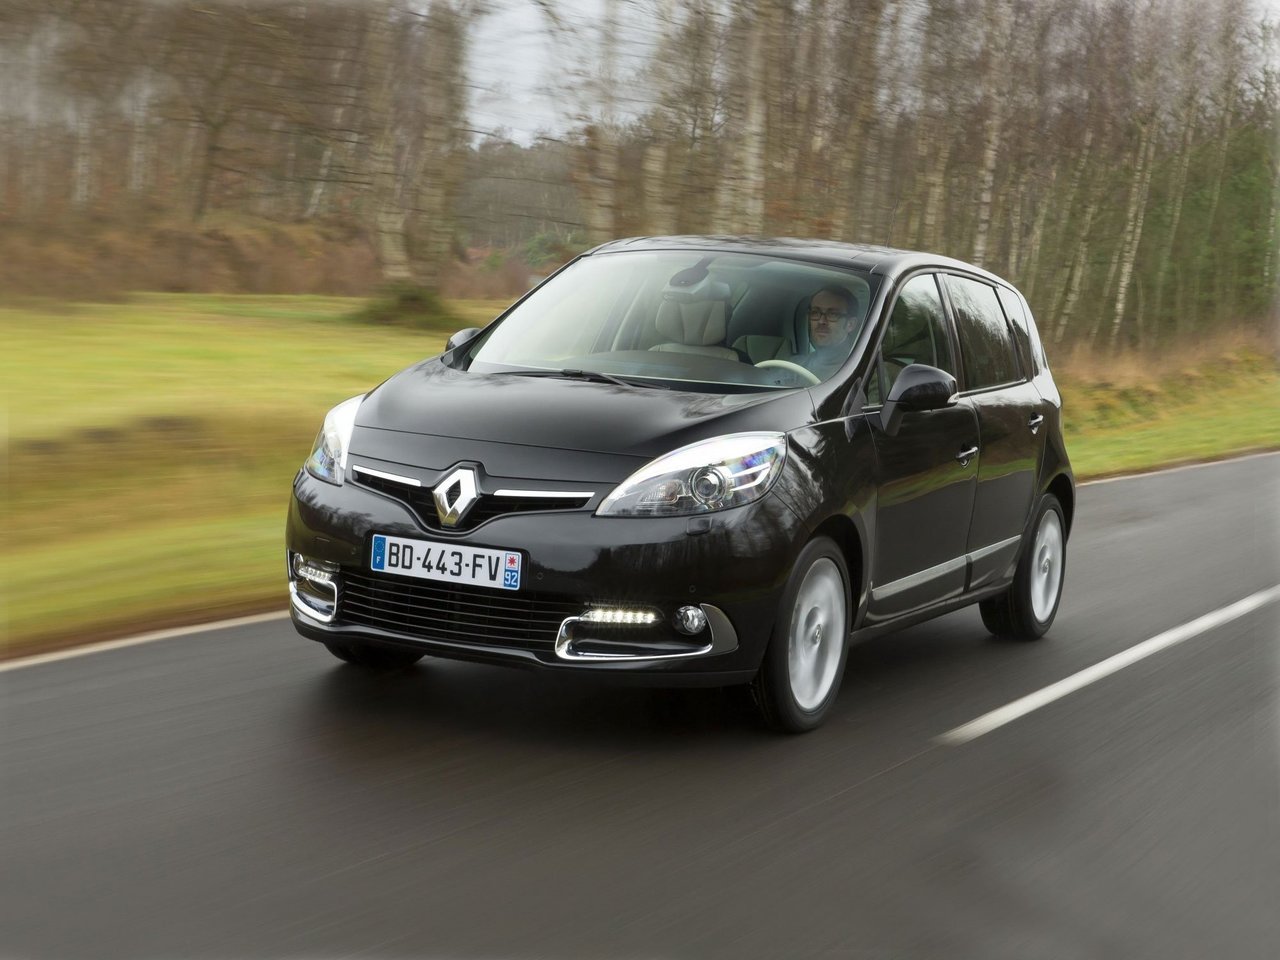 Расход газа четырёх комплектаций компактвэна Renault Scenic. Разница стоимости заправки газом и бензином. Автономный пробег до и после установки ГБО.